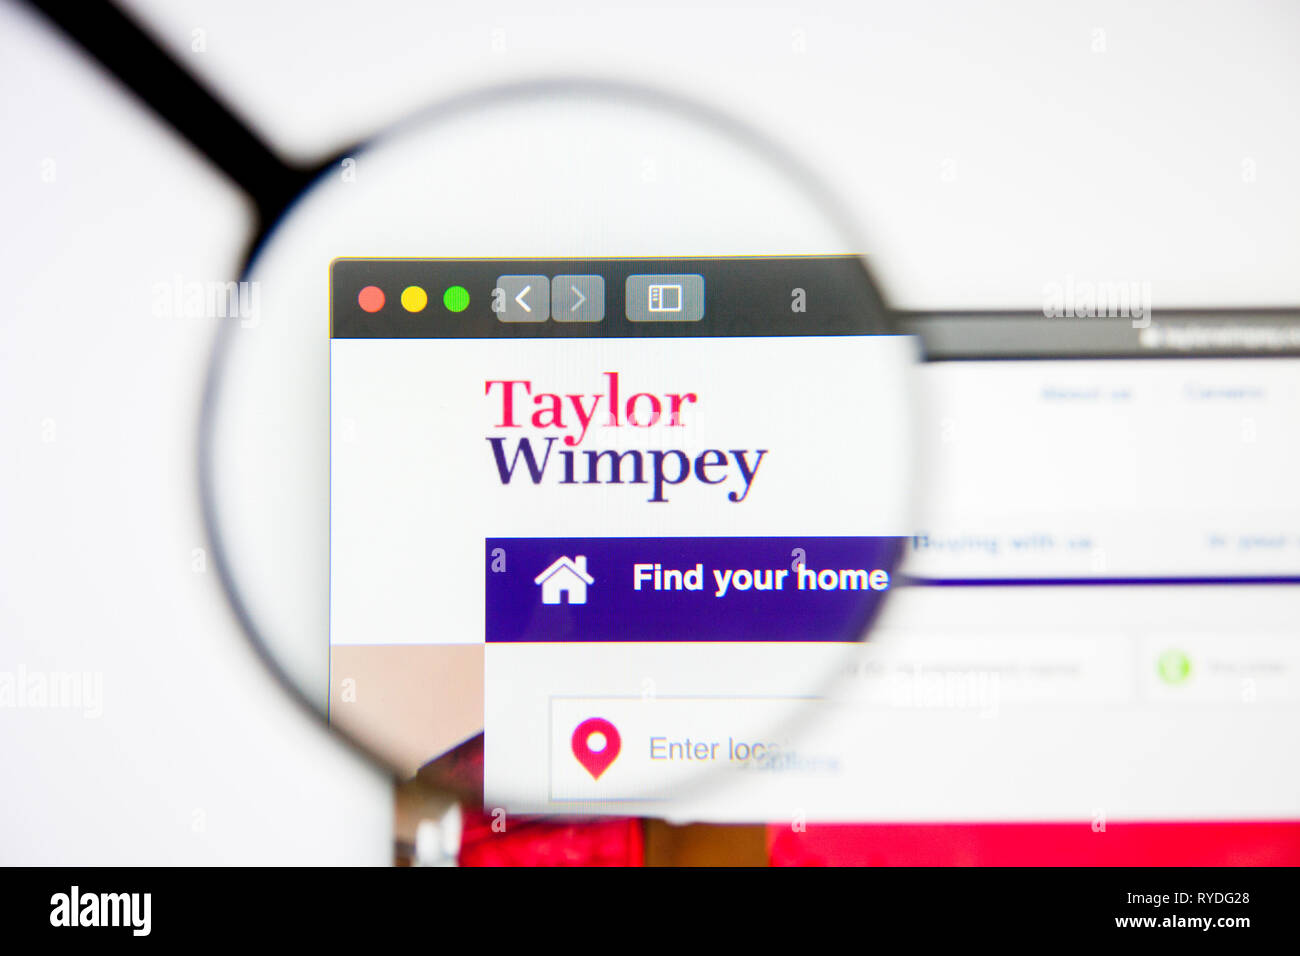 Los Angeles, Kalifornien, USA - 5. März 2019: Taylor Wimpey Homepage. Taylor Wimpey Logo sichtbar auf dem Display, Illustrative Editorial Stockfoto